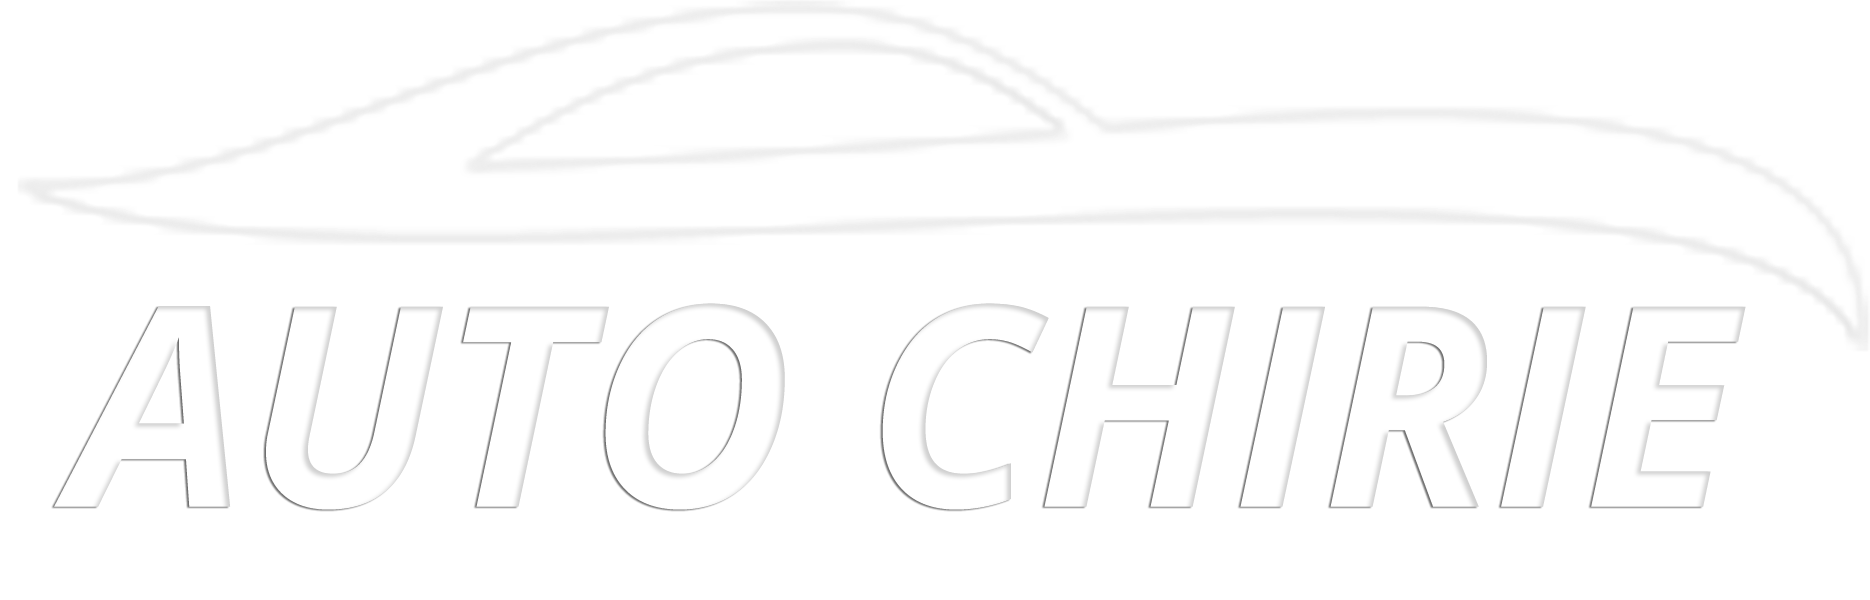 Auto Chirie - Auto chirie Chisinau, masini in arenda Moldova, rent a car